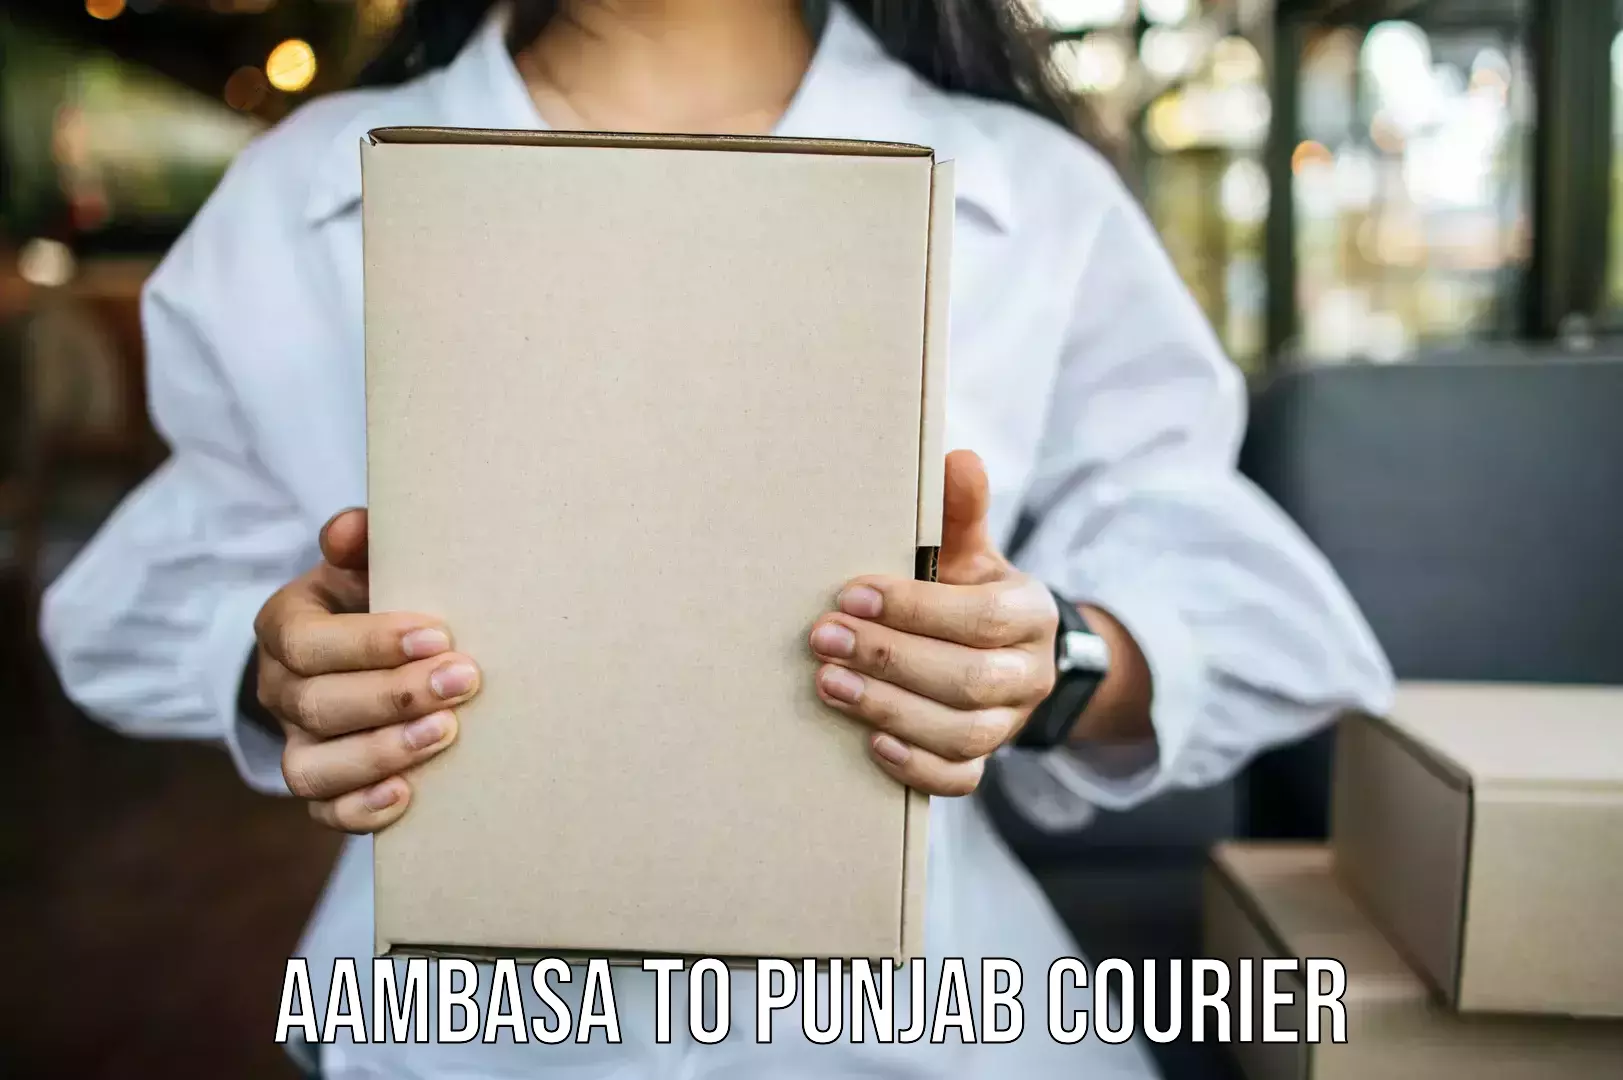 Professional moving company Aambasa to Central University of Punjab Bathinda